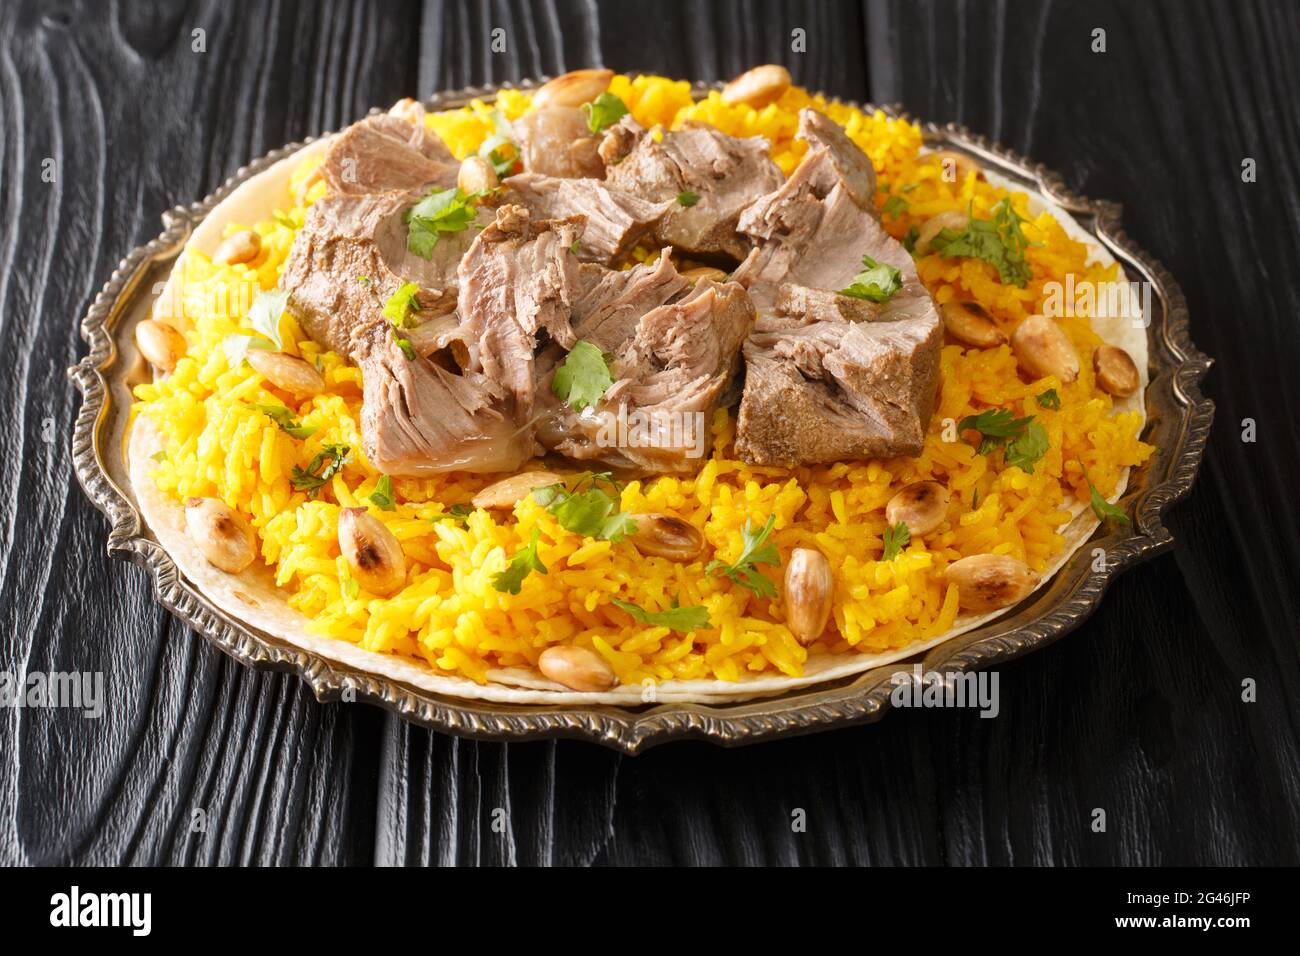 Jordan National Dish Mansaf fatto di carne di agnello yogurt magro, chiodo di riso nel piatto sul tavolo. Orizzontale Foto Stock